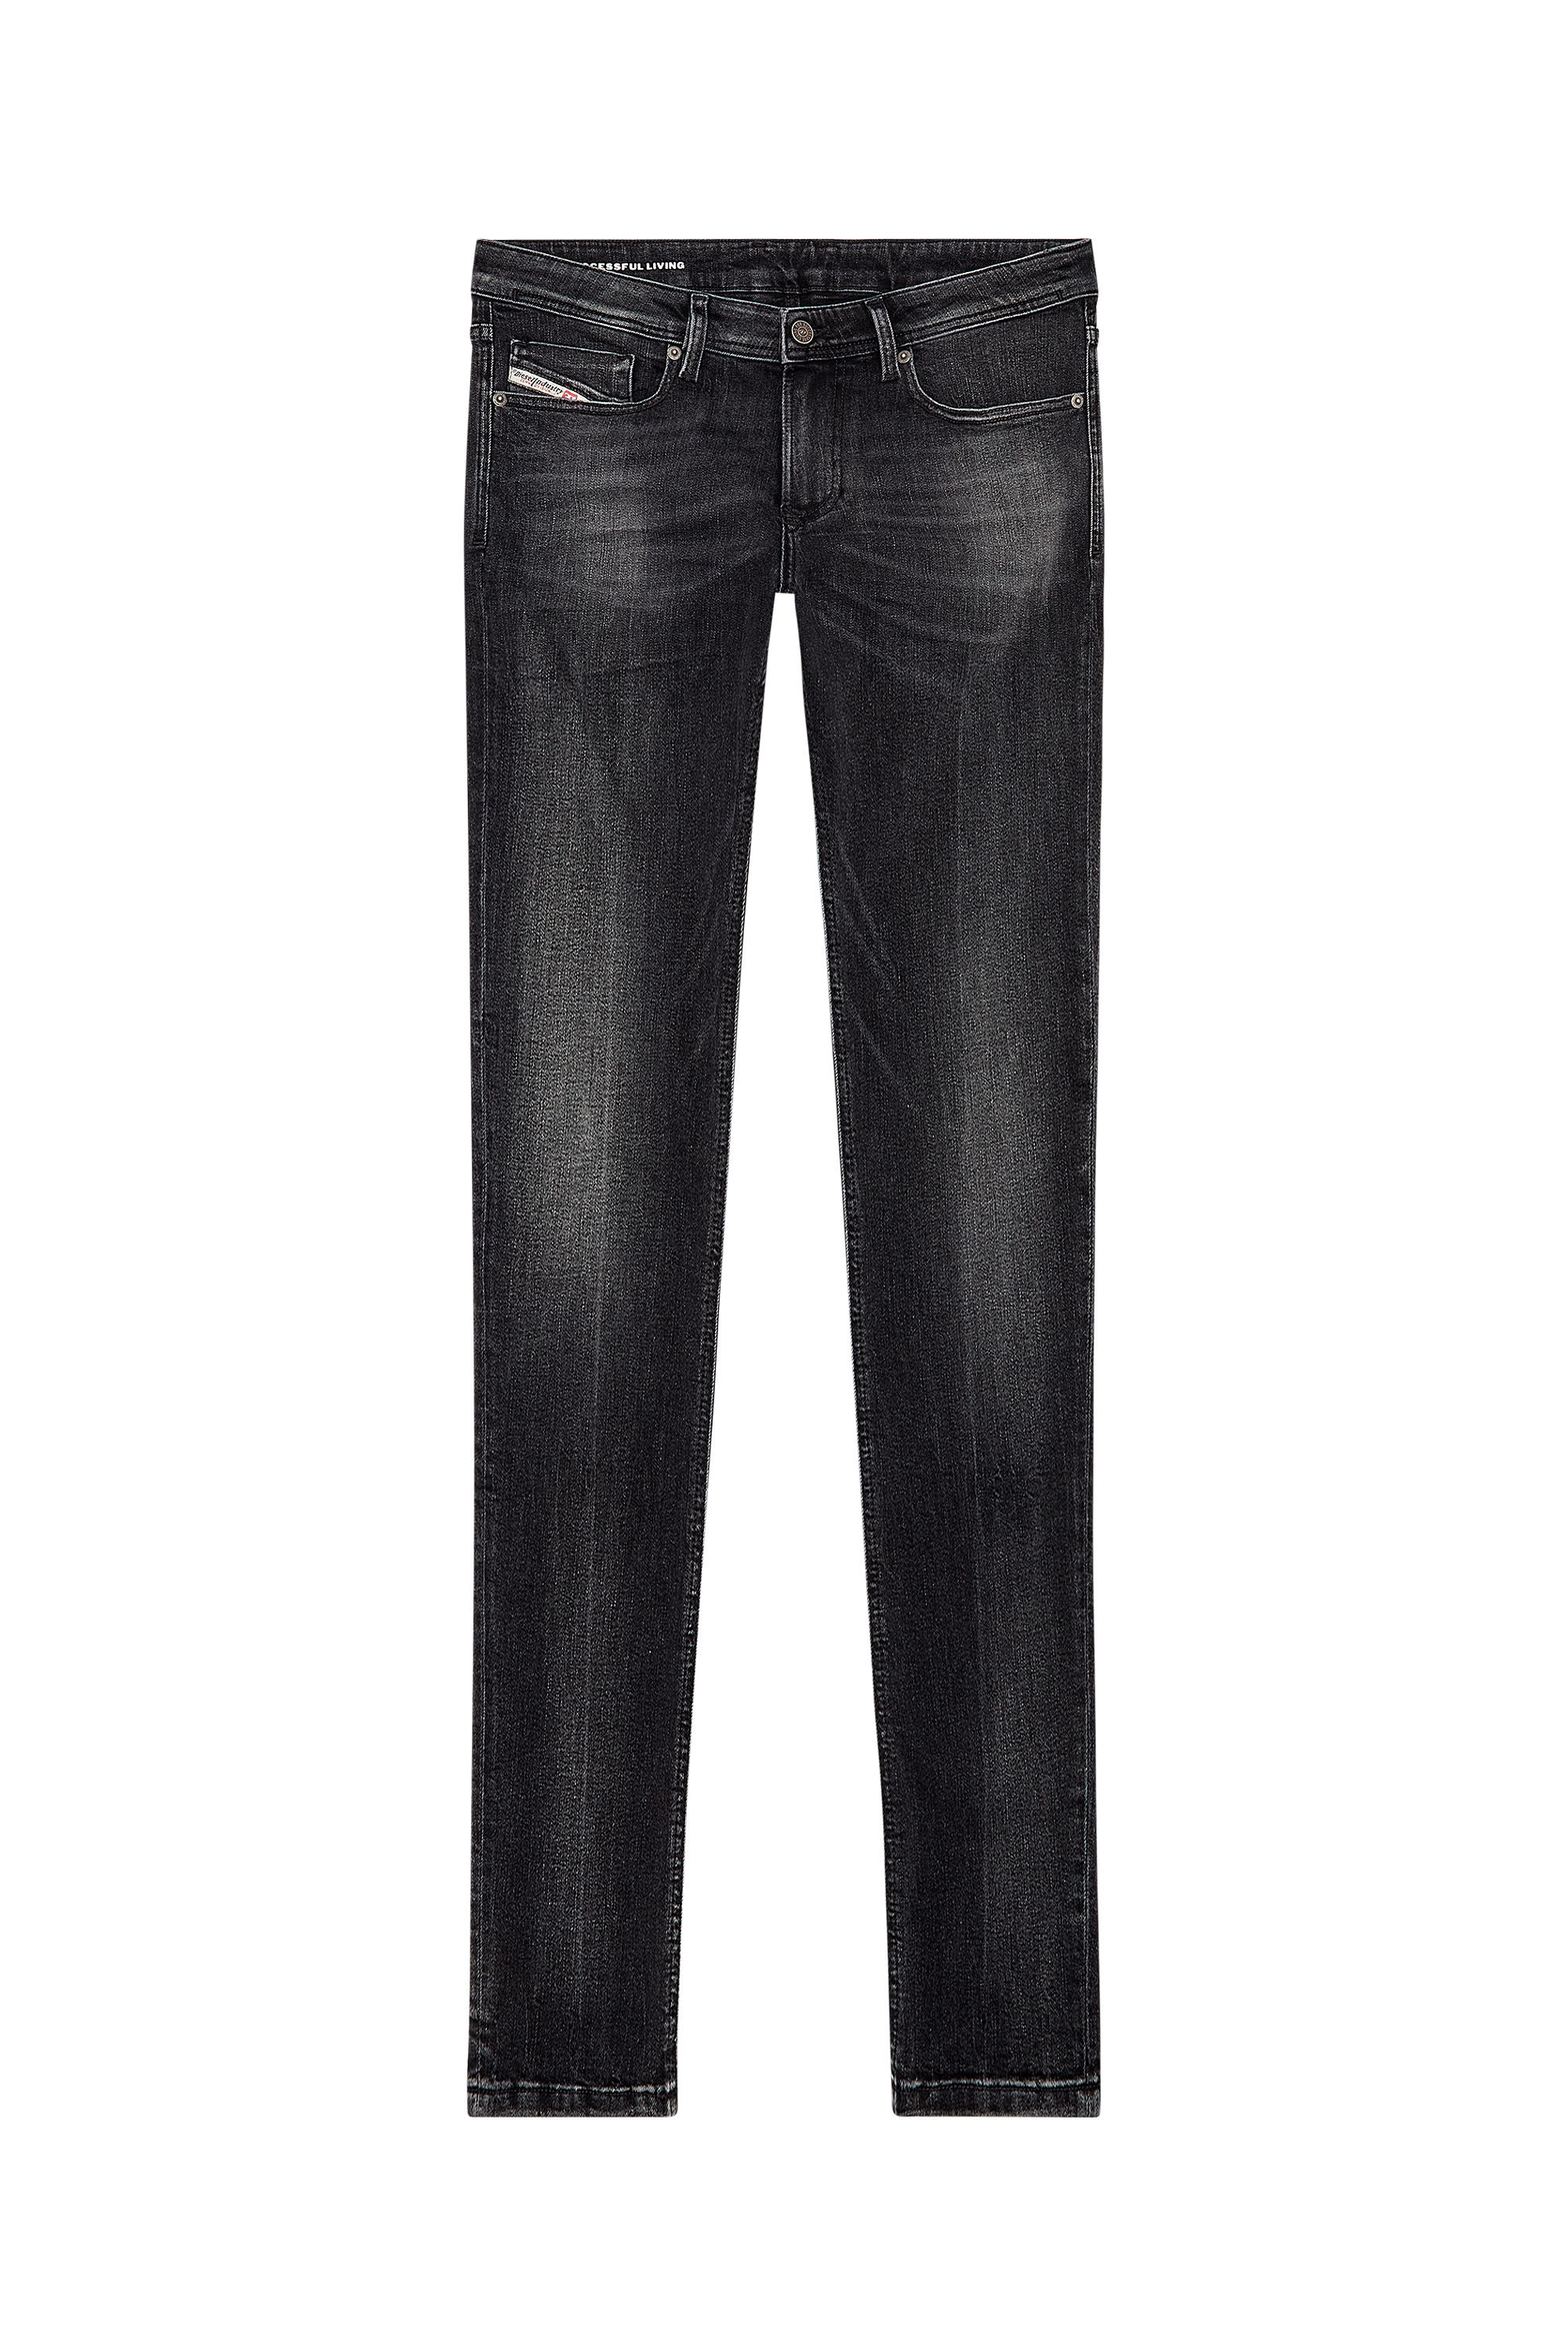 Men's Skinny Jeans | Black/Dark grey | Diesel 1979 Sleenker